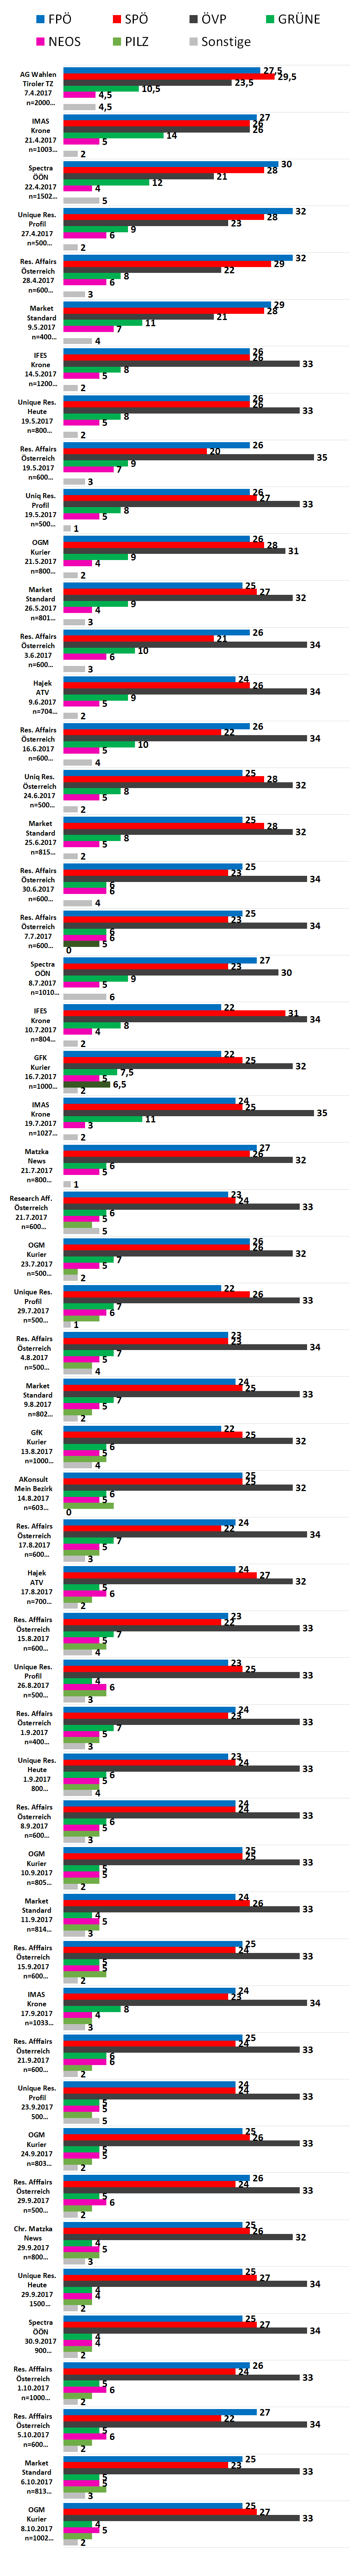 Die Infografik zeigt die aktuellsten Ergebnisse der Wahlumfragen zur Nationalratswahl 2017. In der aktuellsten Umfrage von GfK pendelt sich die ÖVP bei 32 Prozent ein. An zweiter Stelle liegt die SPÖ mit 25% gefolgt von der FPÖ mit 22%. Die Grünen können zur Zeit mit, 7,5% rechnen. Peter Pilz kann immerhin mit 6,5% rechnen.